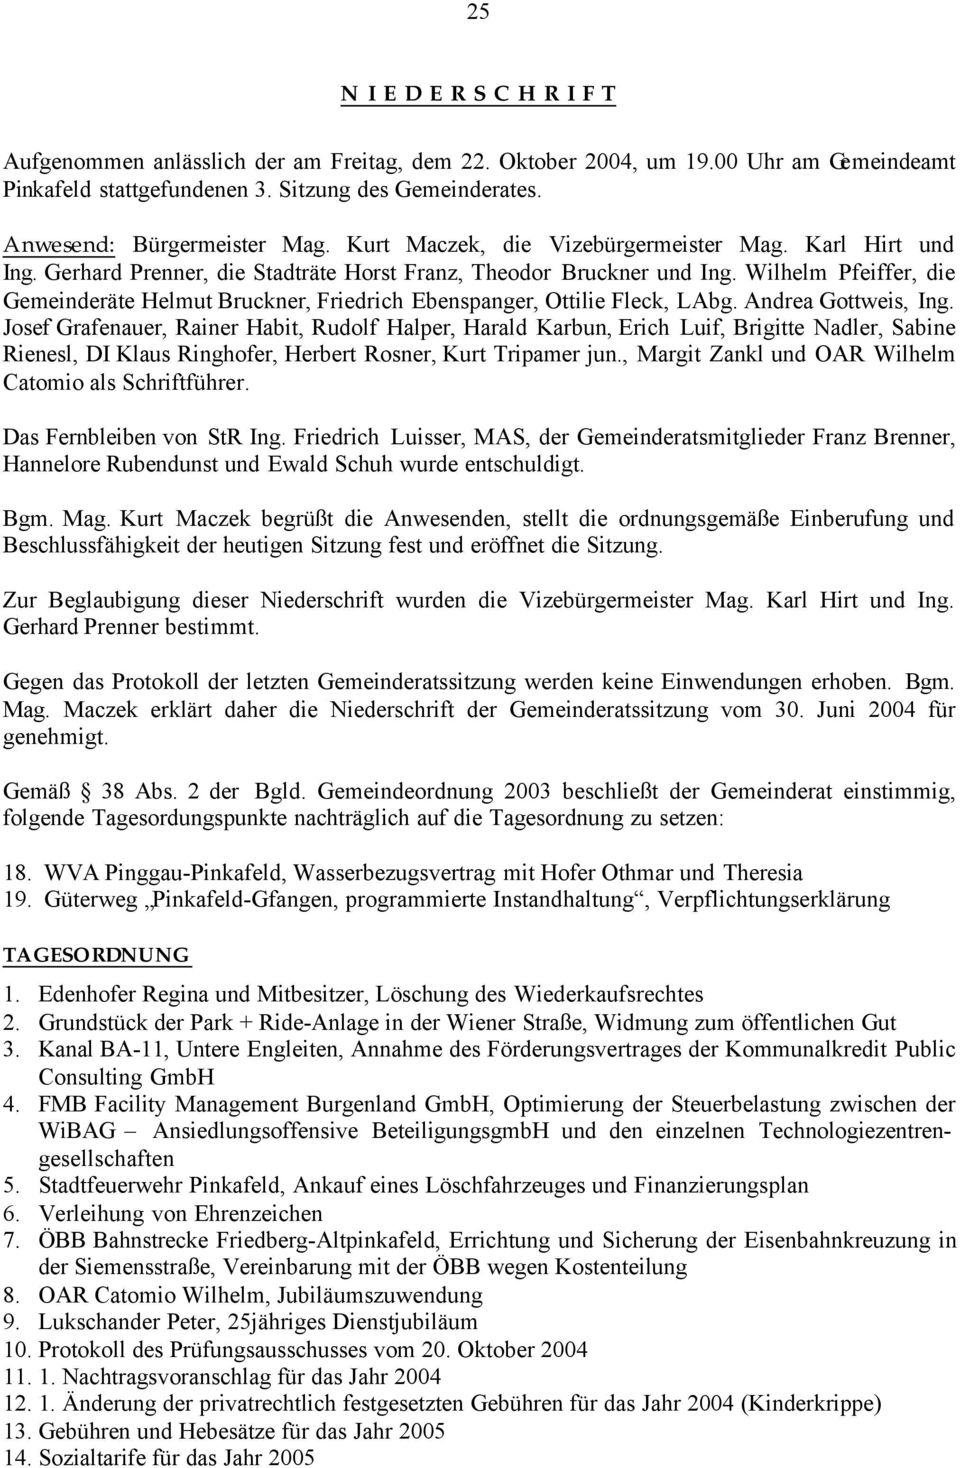 Wilhelm Pfeiffer, die Gemeinderäte Helmut Bruckner, Friedrich Ebenspanger, Ottilie Fleck, LAbg. Andrea Gottweis, Ing.